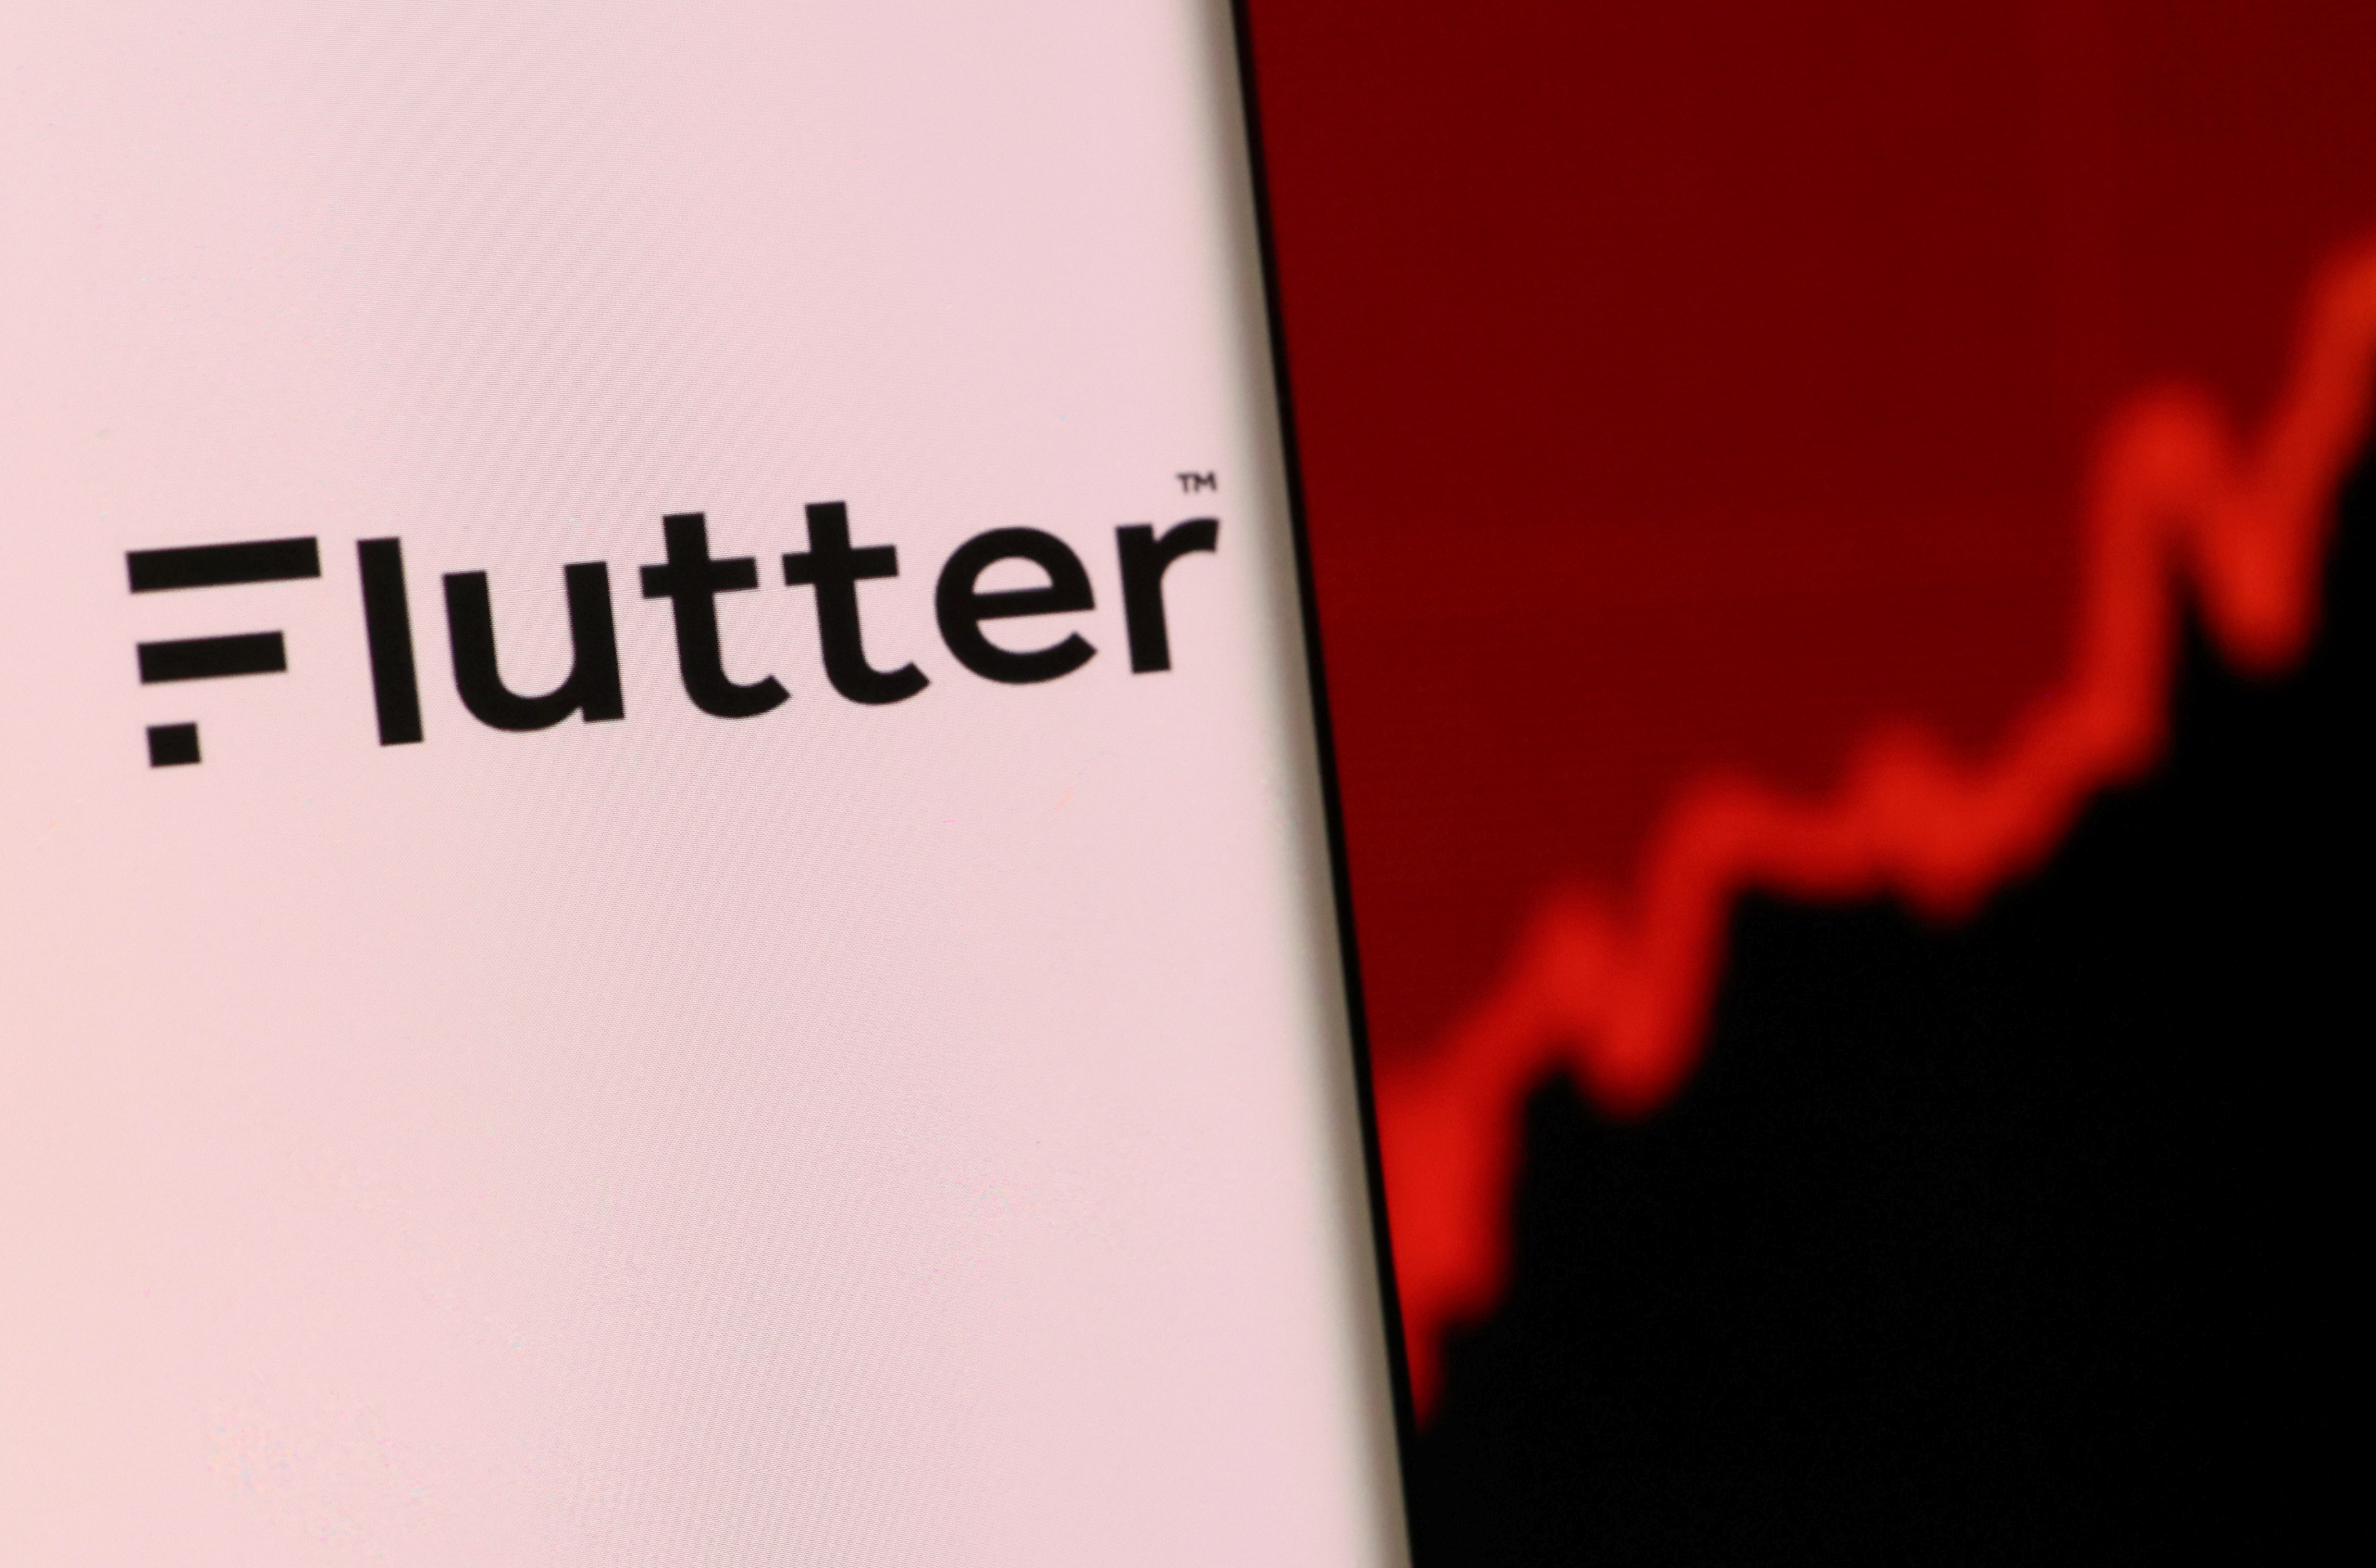 Illustration shows smartphone with Flutter's logo displayed